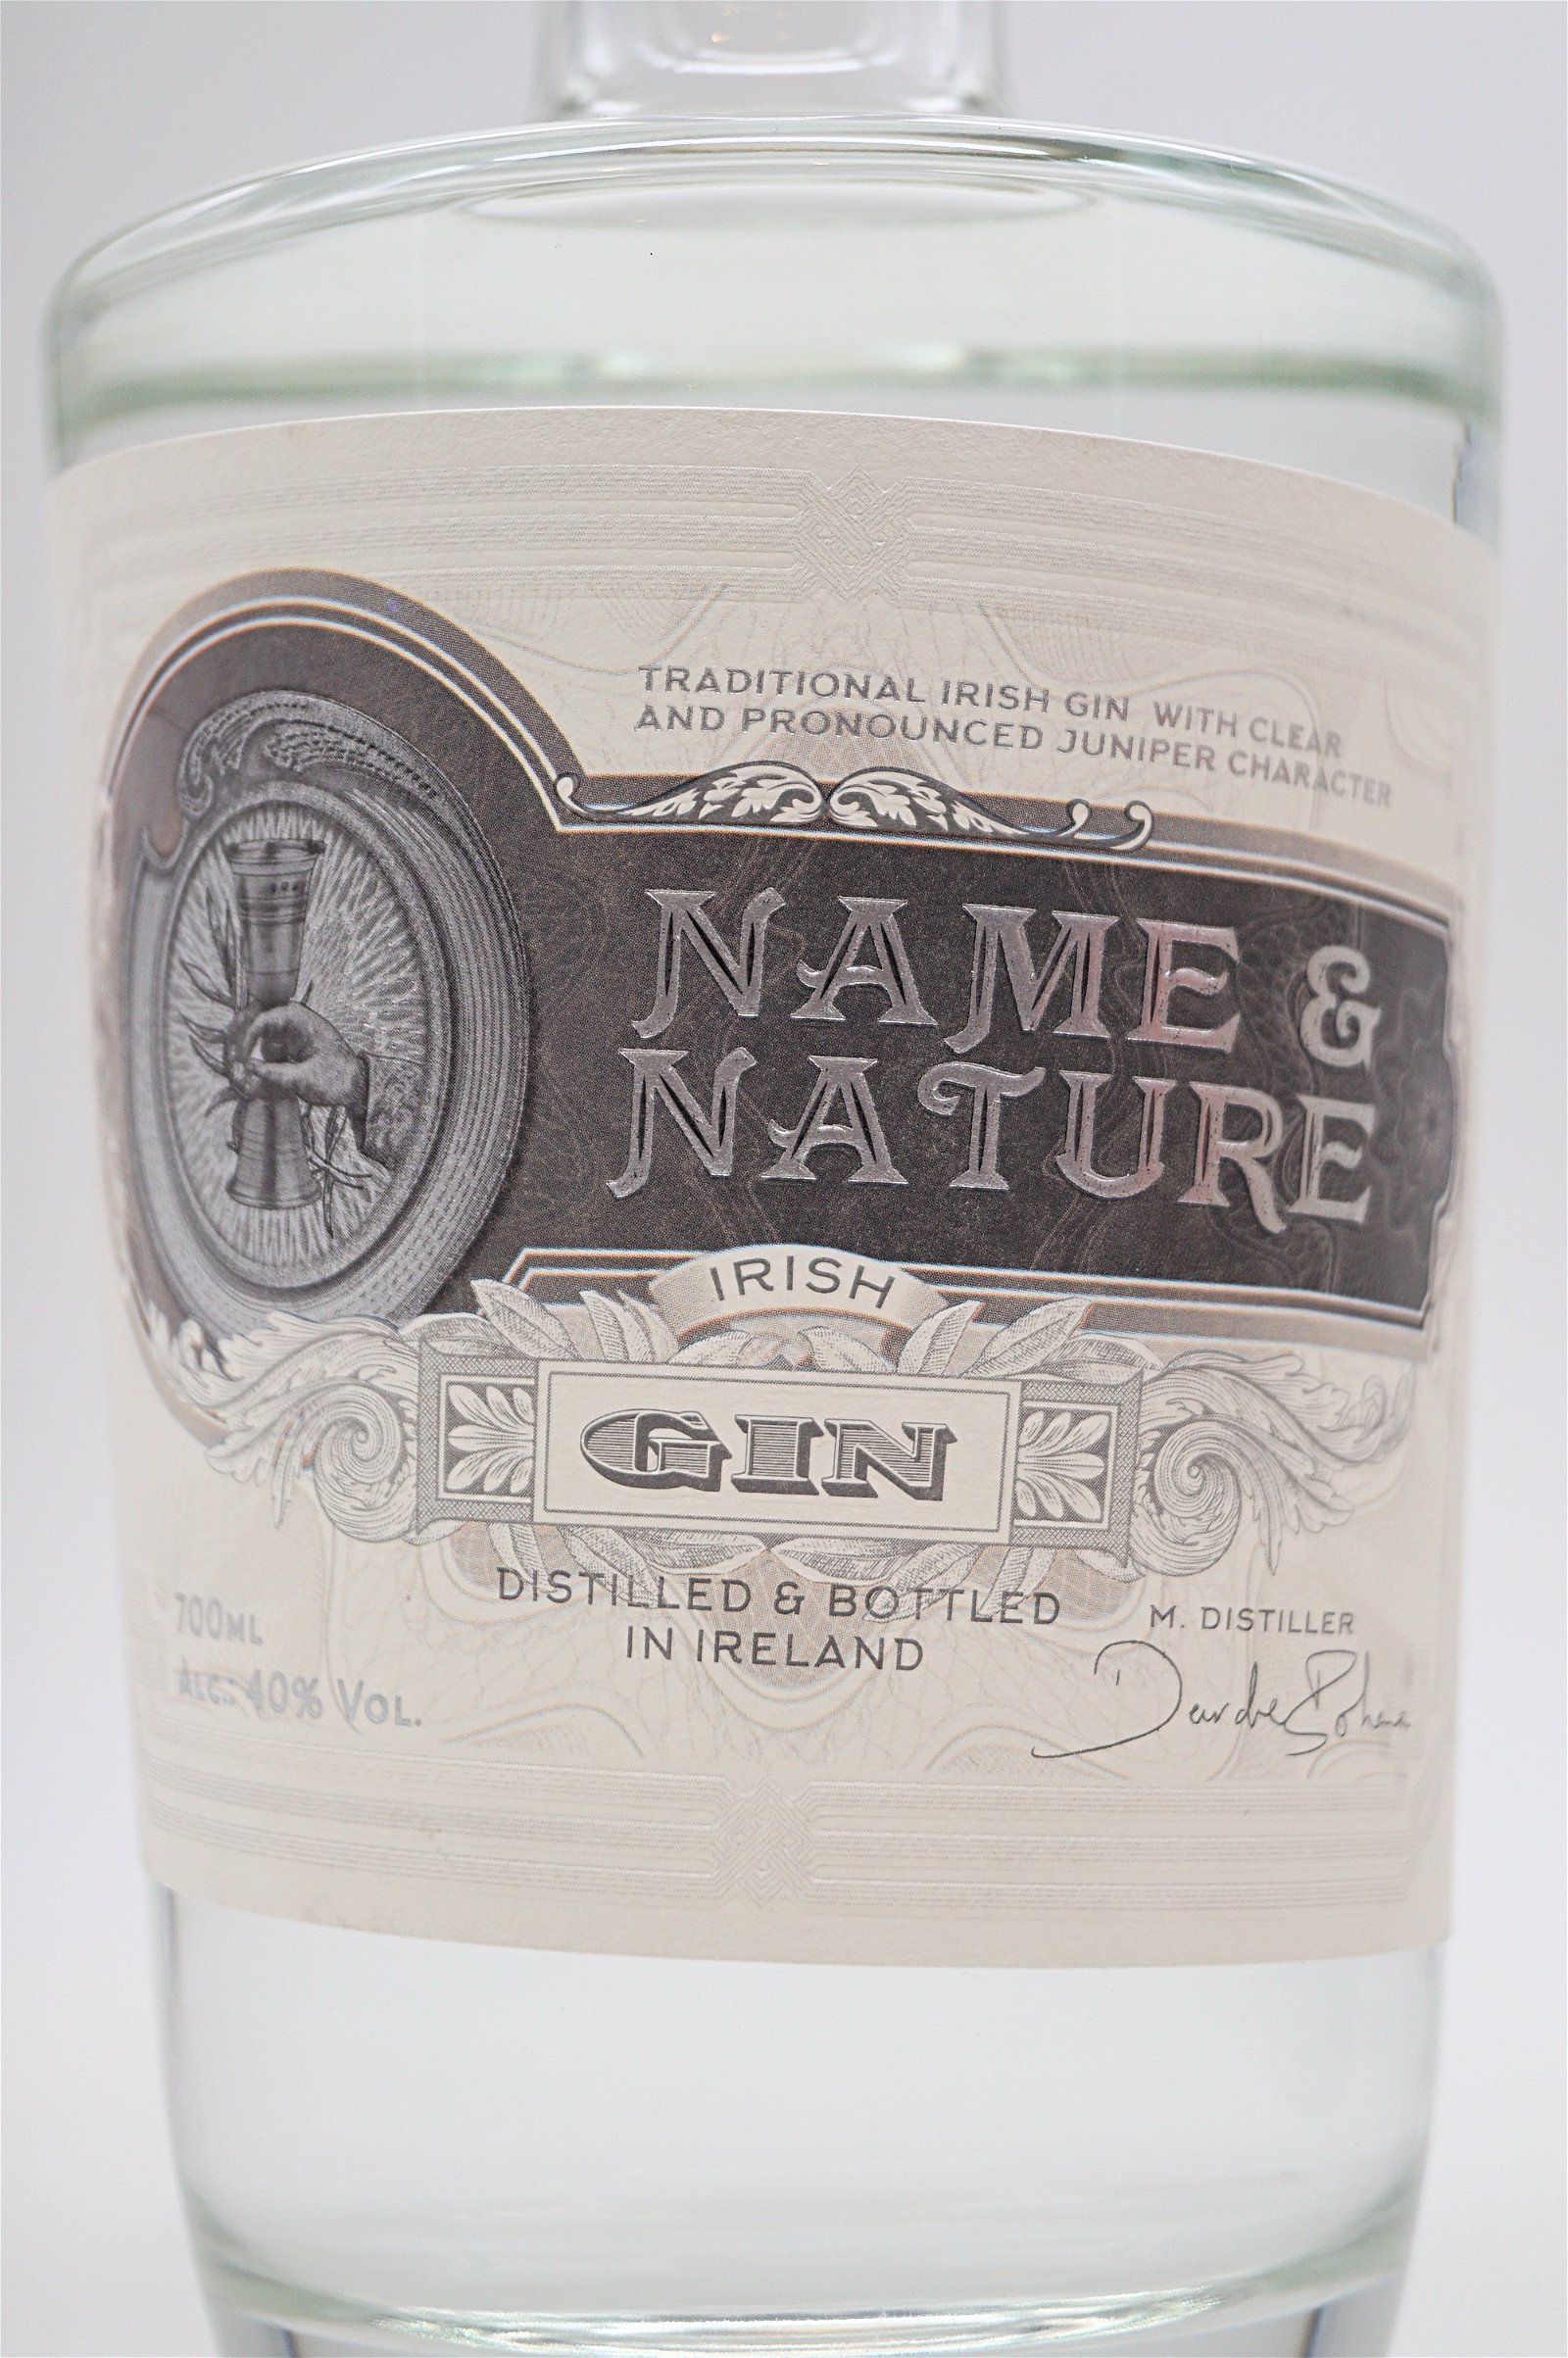 Name & Nature Pure Irish Gin